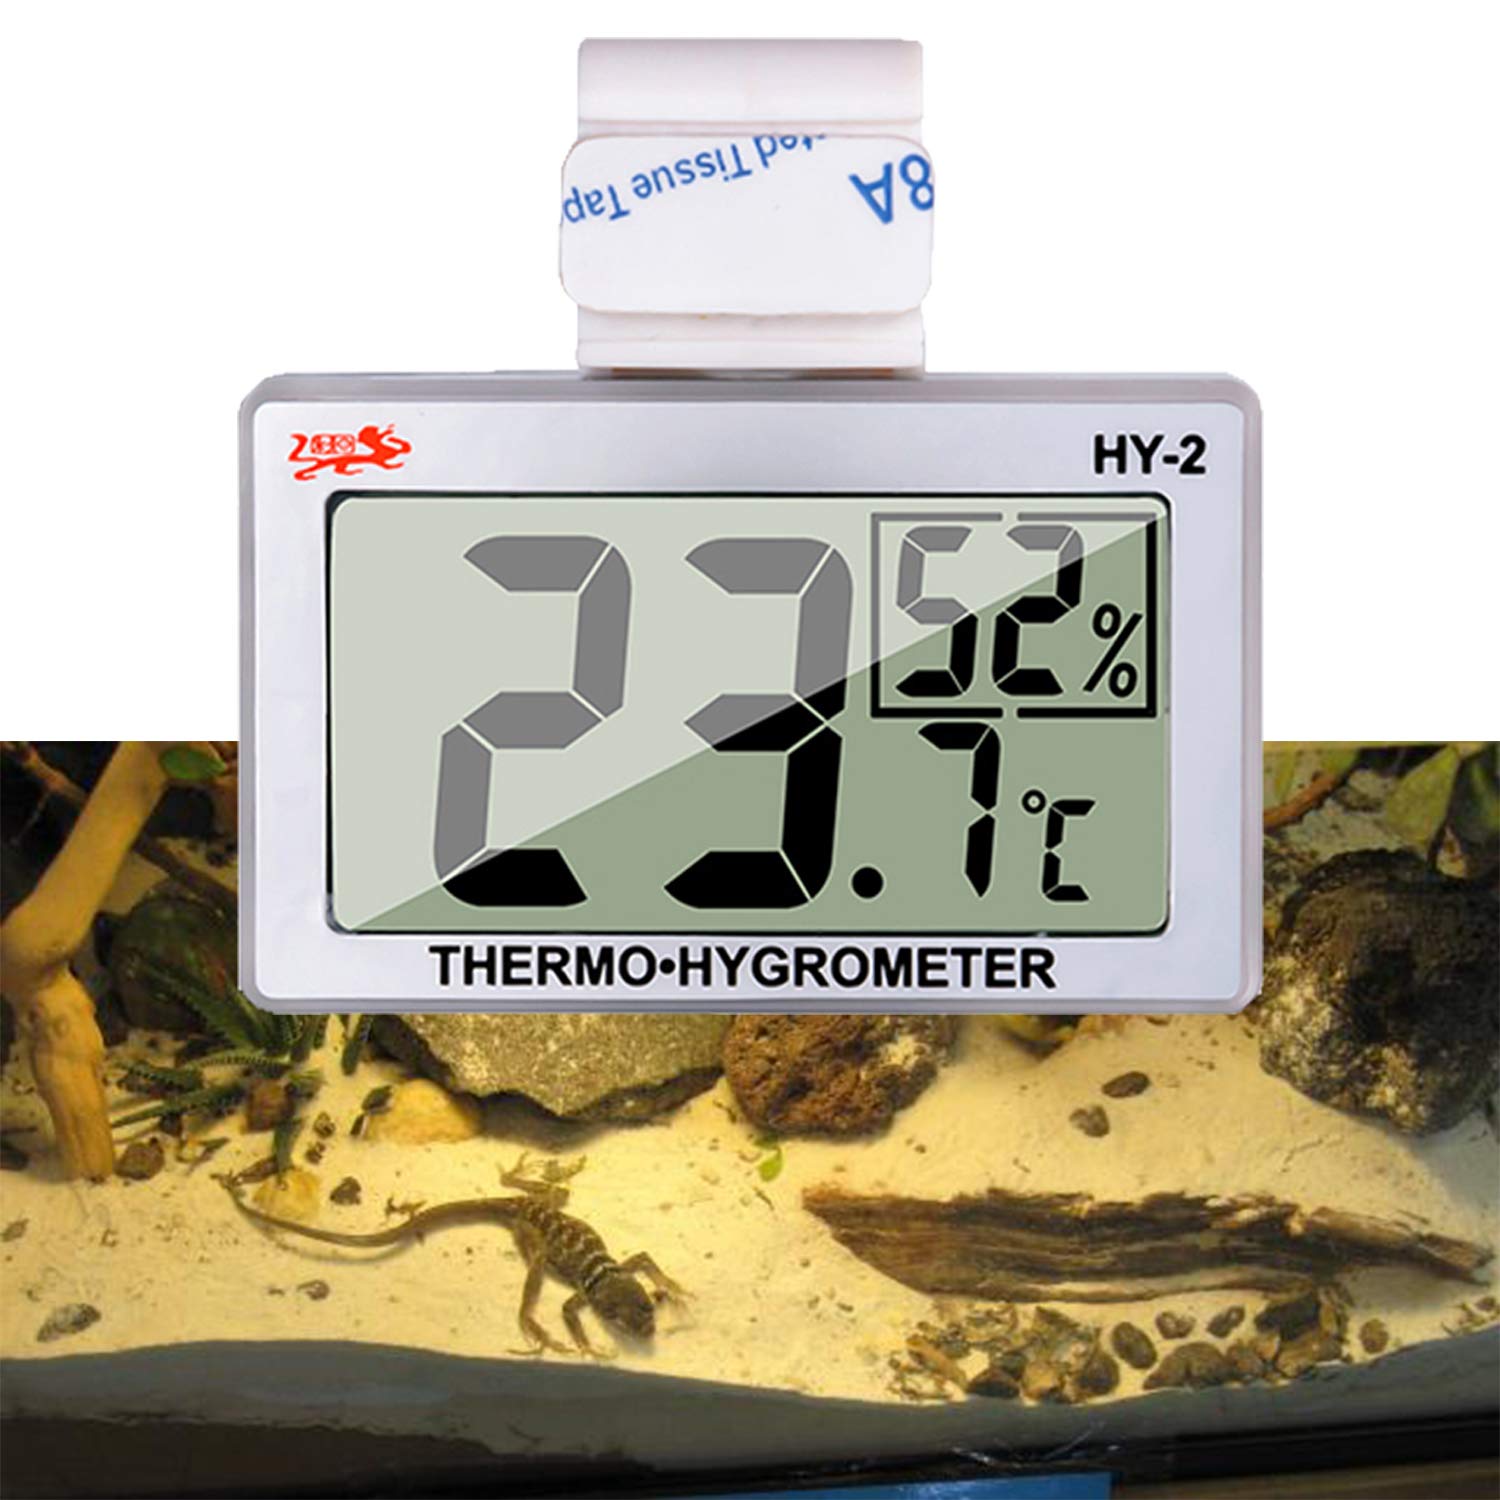 hygrometer temperature humidity meter terrarium accessories